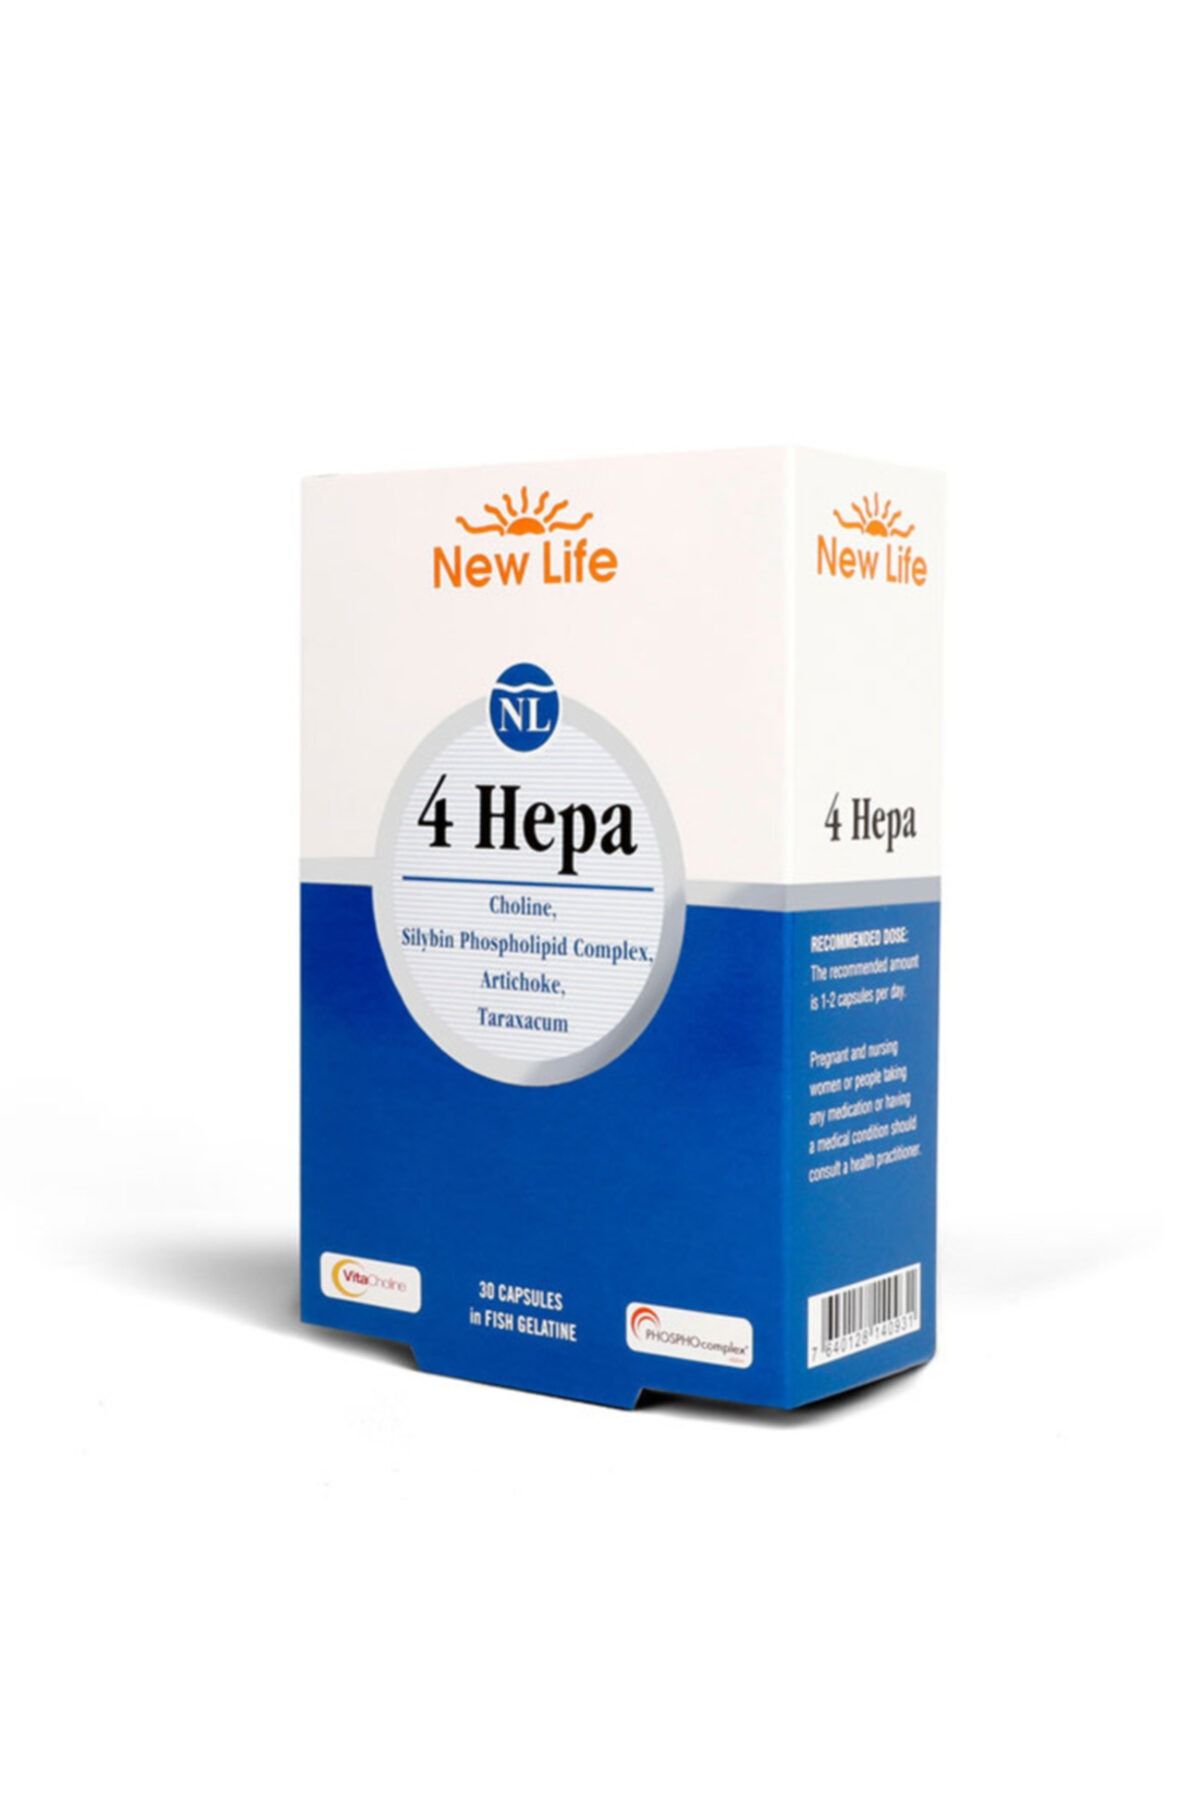 New life фф. 4 HEPA БАД. New Life 4 HEPA инструкция. Нью лайф 4hepa. 4 HEPA для печени.